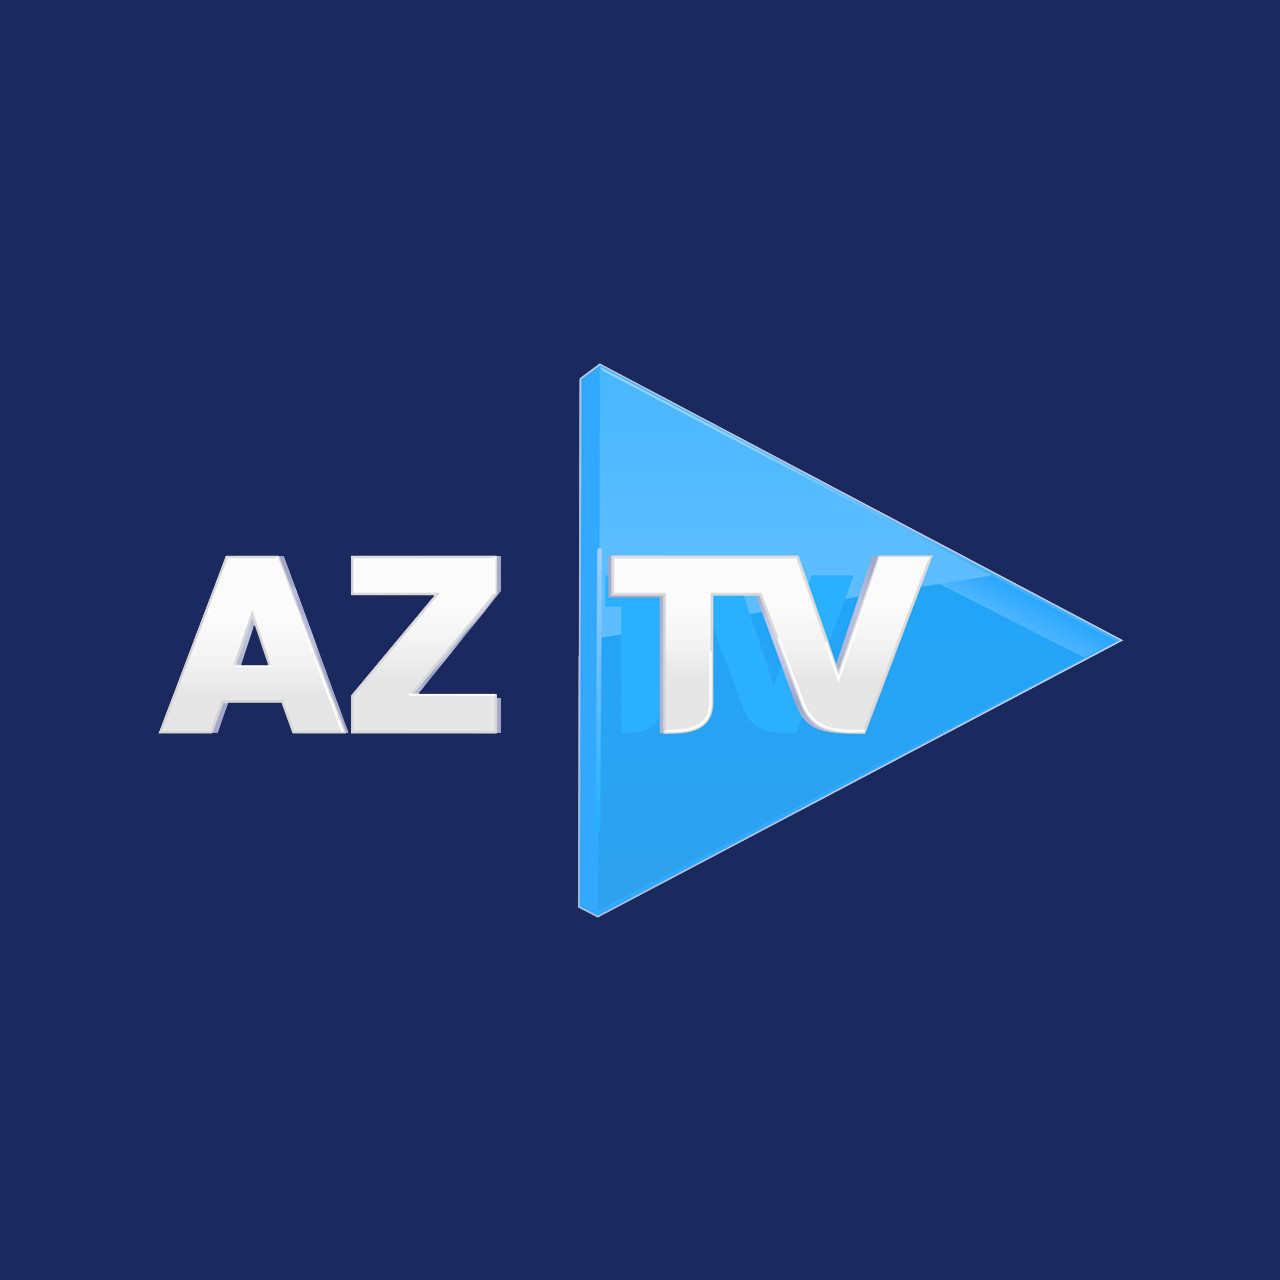 AzTV-də yeni kadr islahatları oldu - Daha bir tanınmış jurnalistə vəzifə verildi